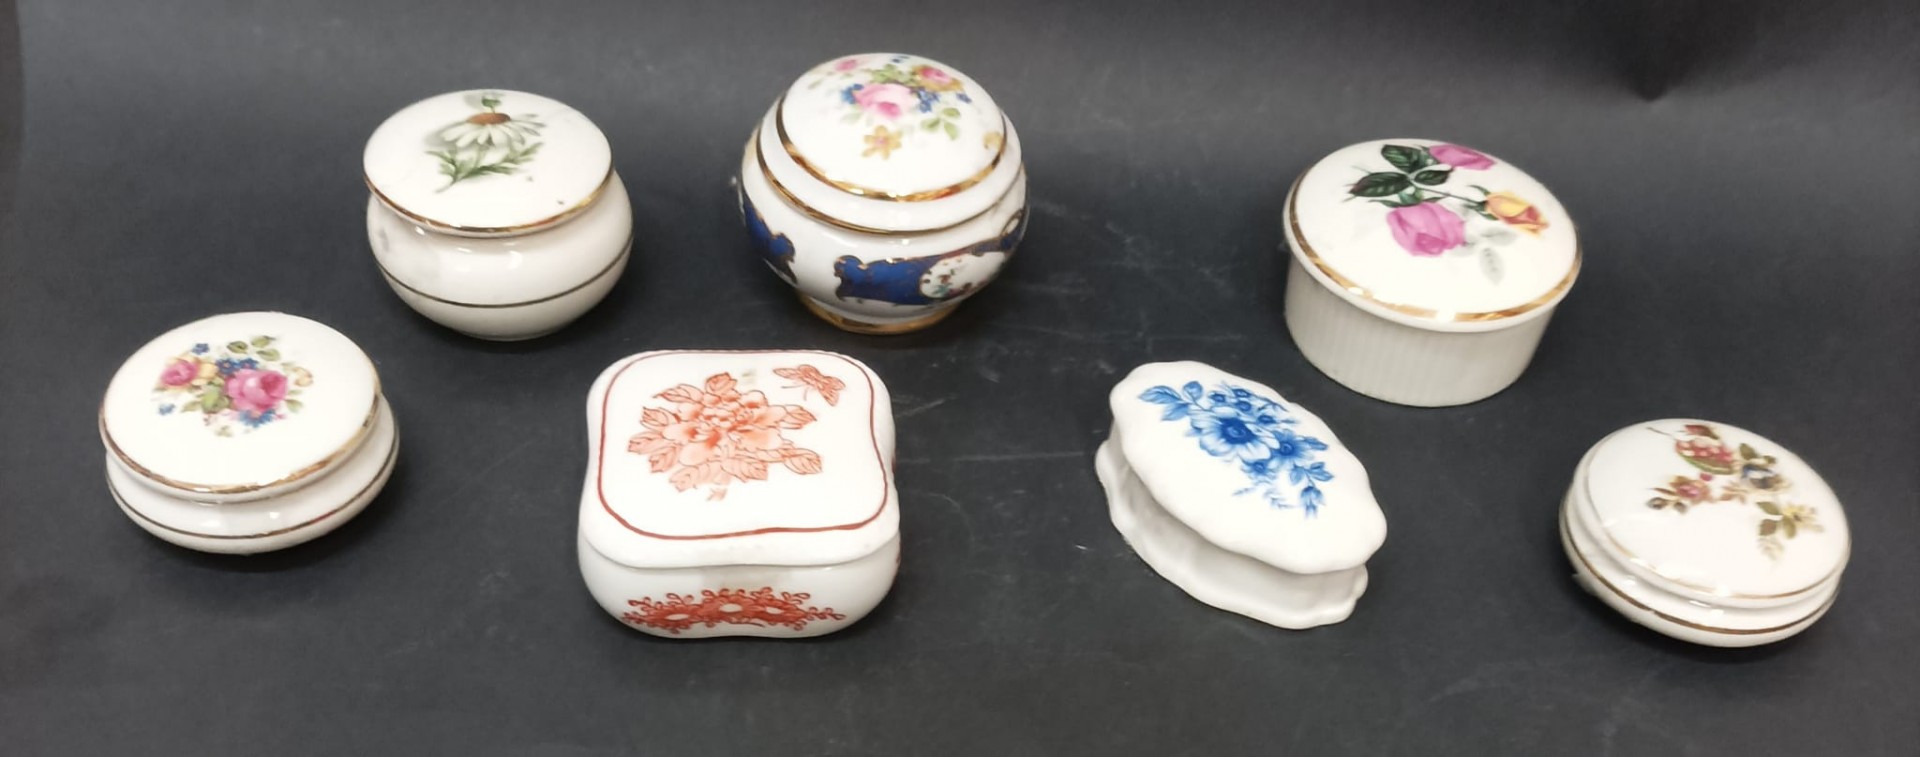 Conjunto de sete caixas em porcelana policroma com decoração floral